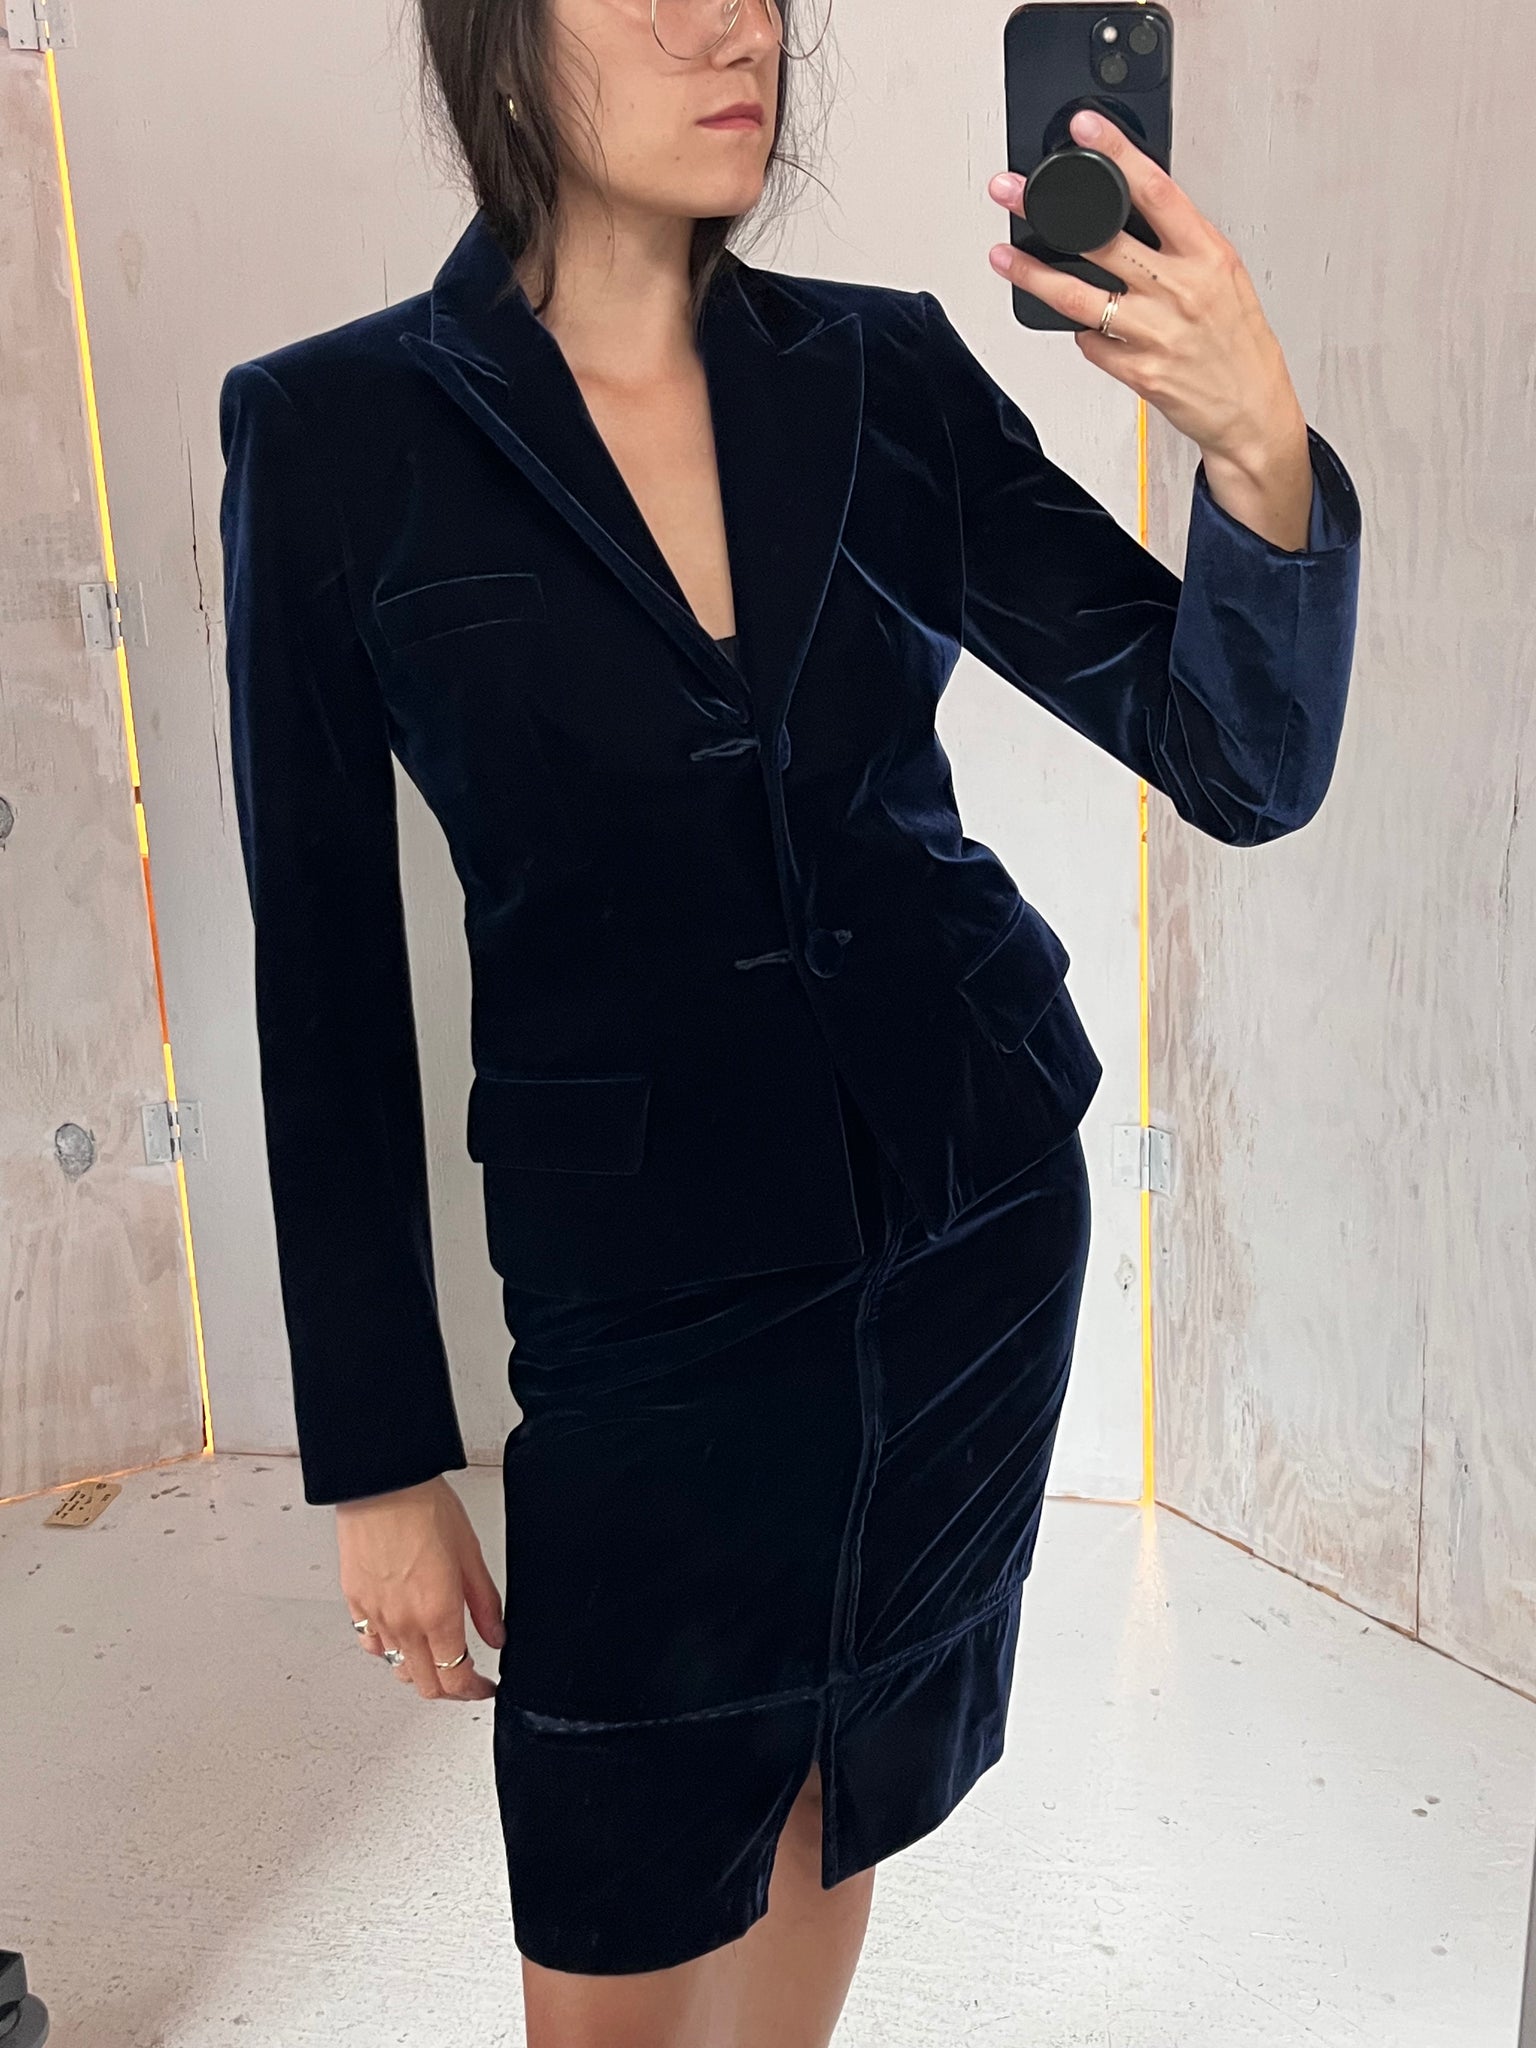 Yves Saint Laurent Velvet Suit